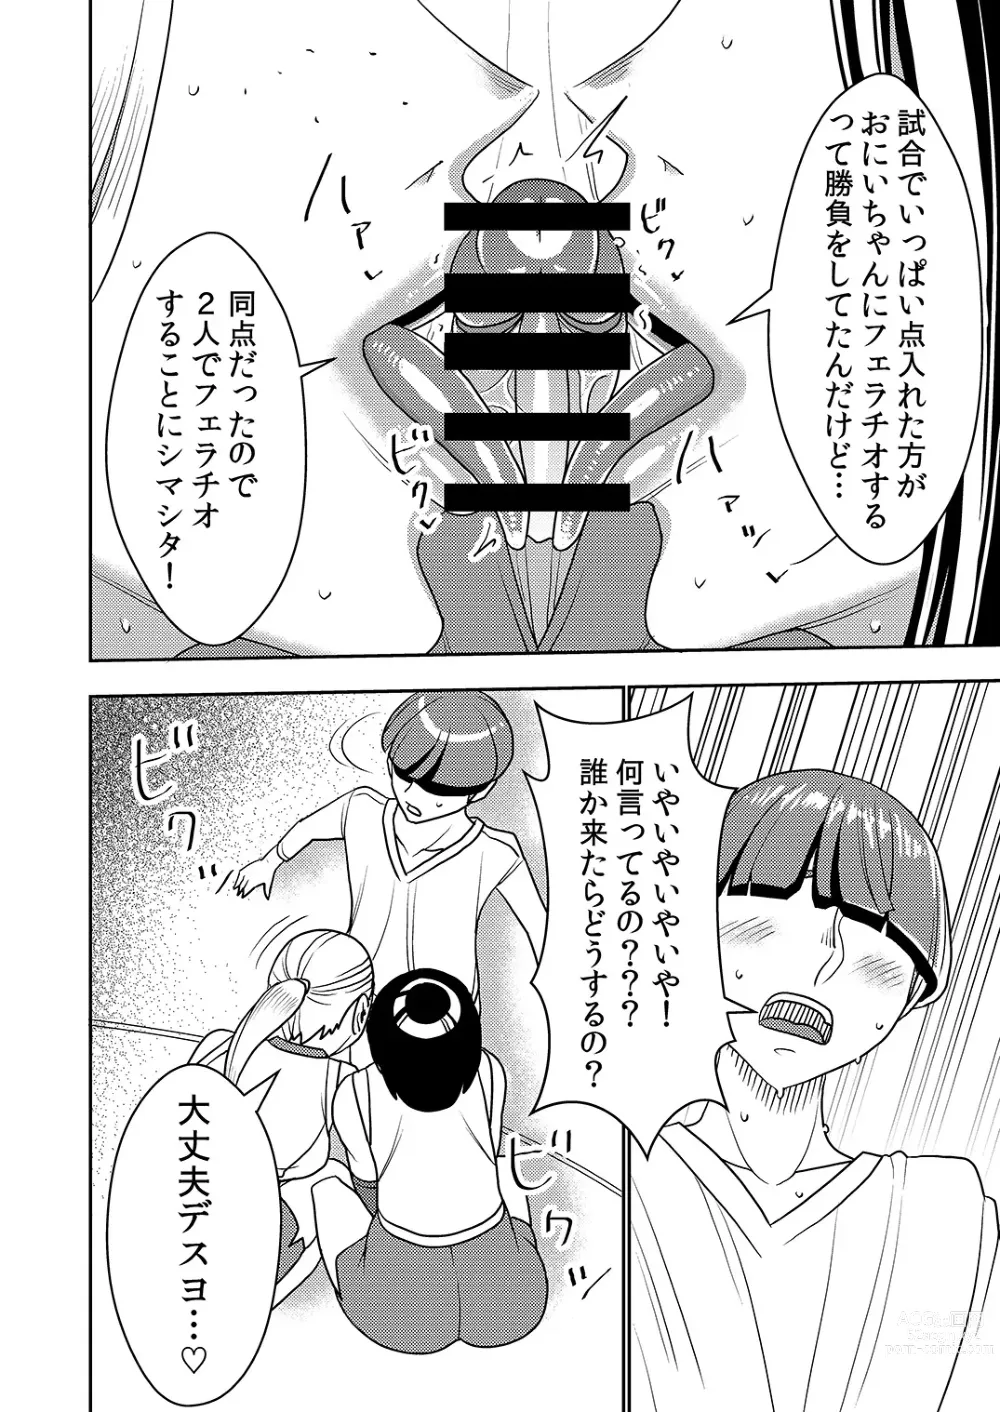 Page 7 of doujinshi Dekakute Eroi Boku no Imouto 5